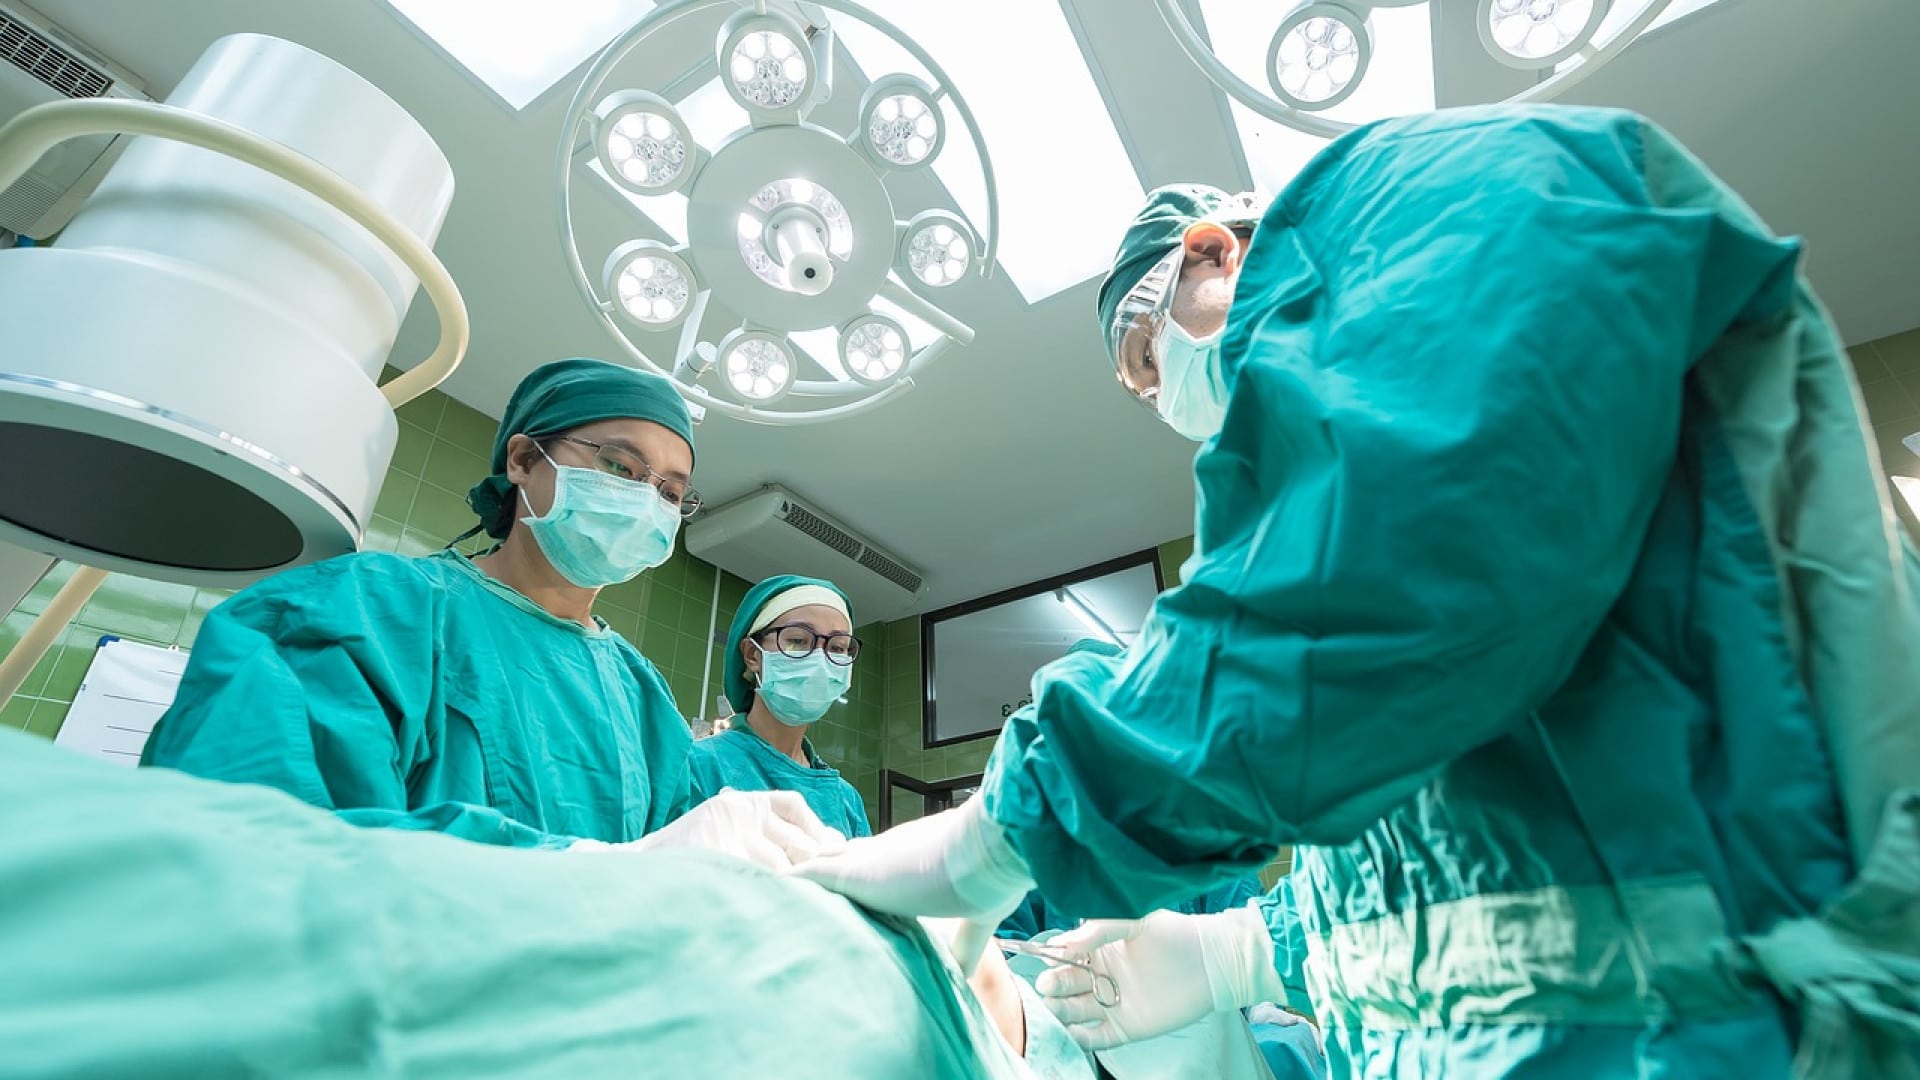 Équipe chirurgicale effectuant une opération sous les lumières vives de la salle d’opération.